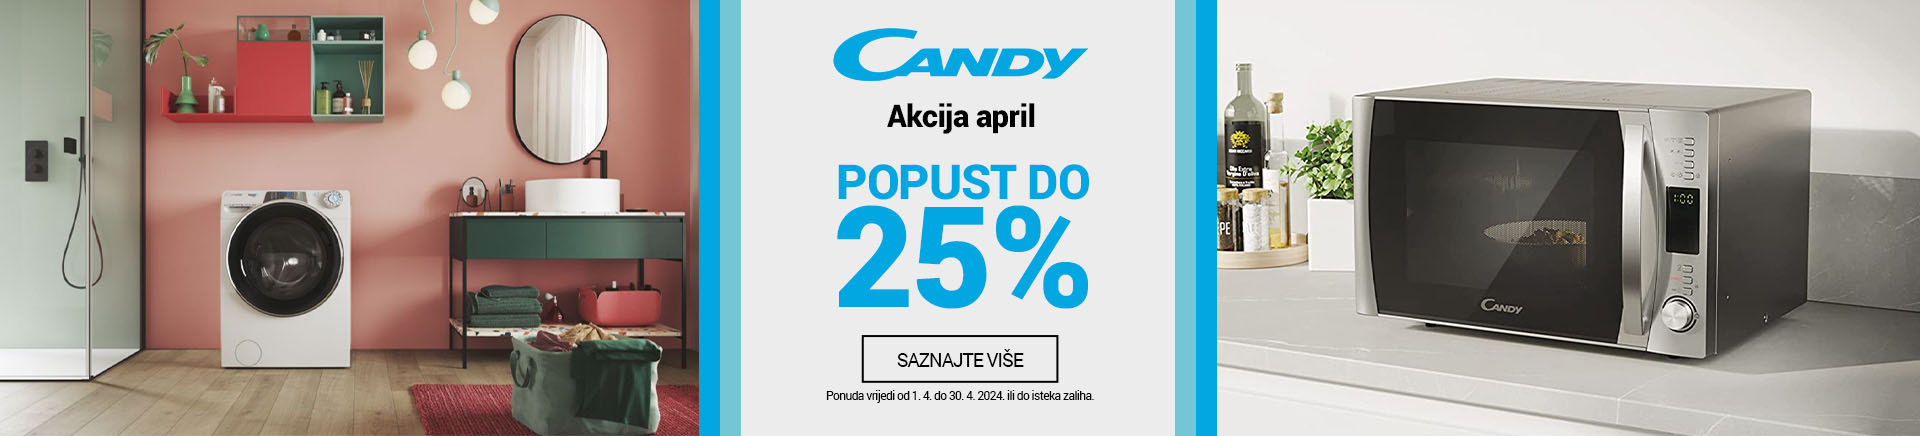 BA Candy BT Akcija April 25posto MOBILE 380 X 436.jpg